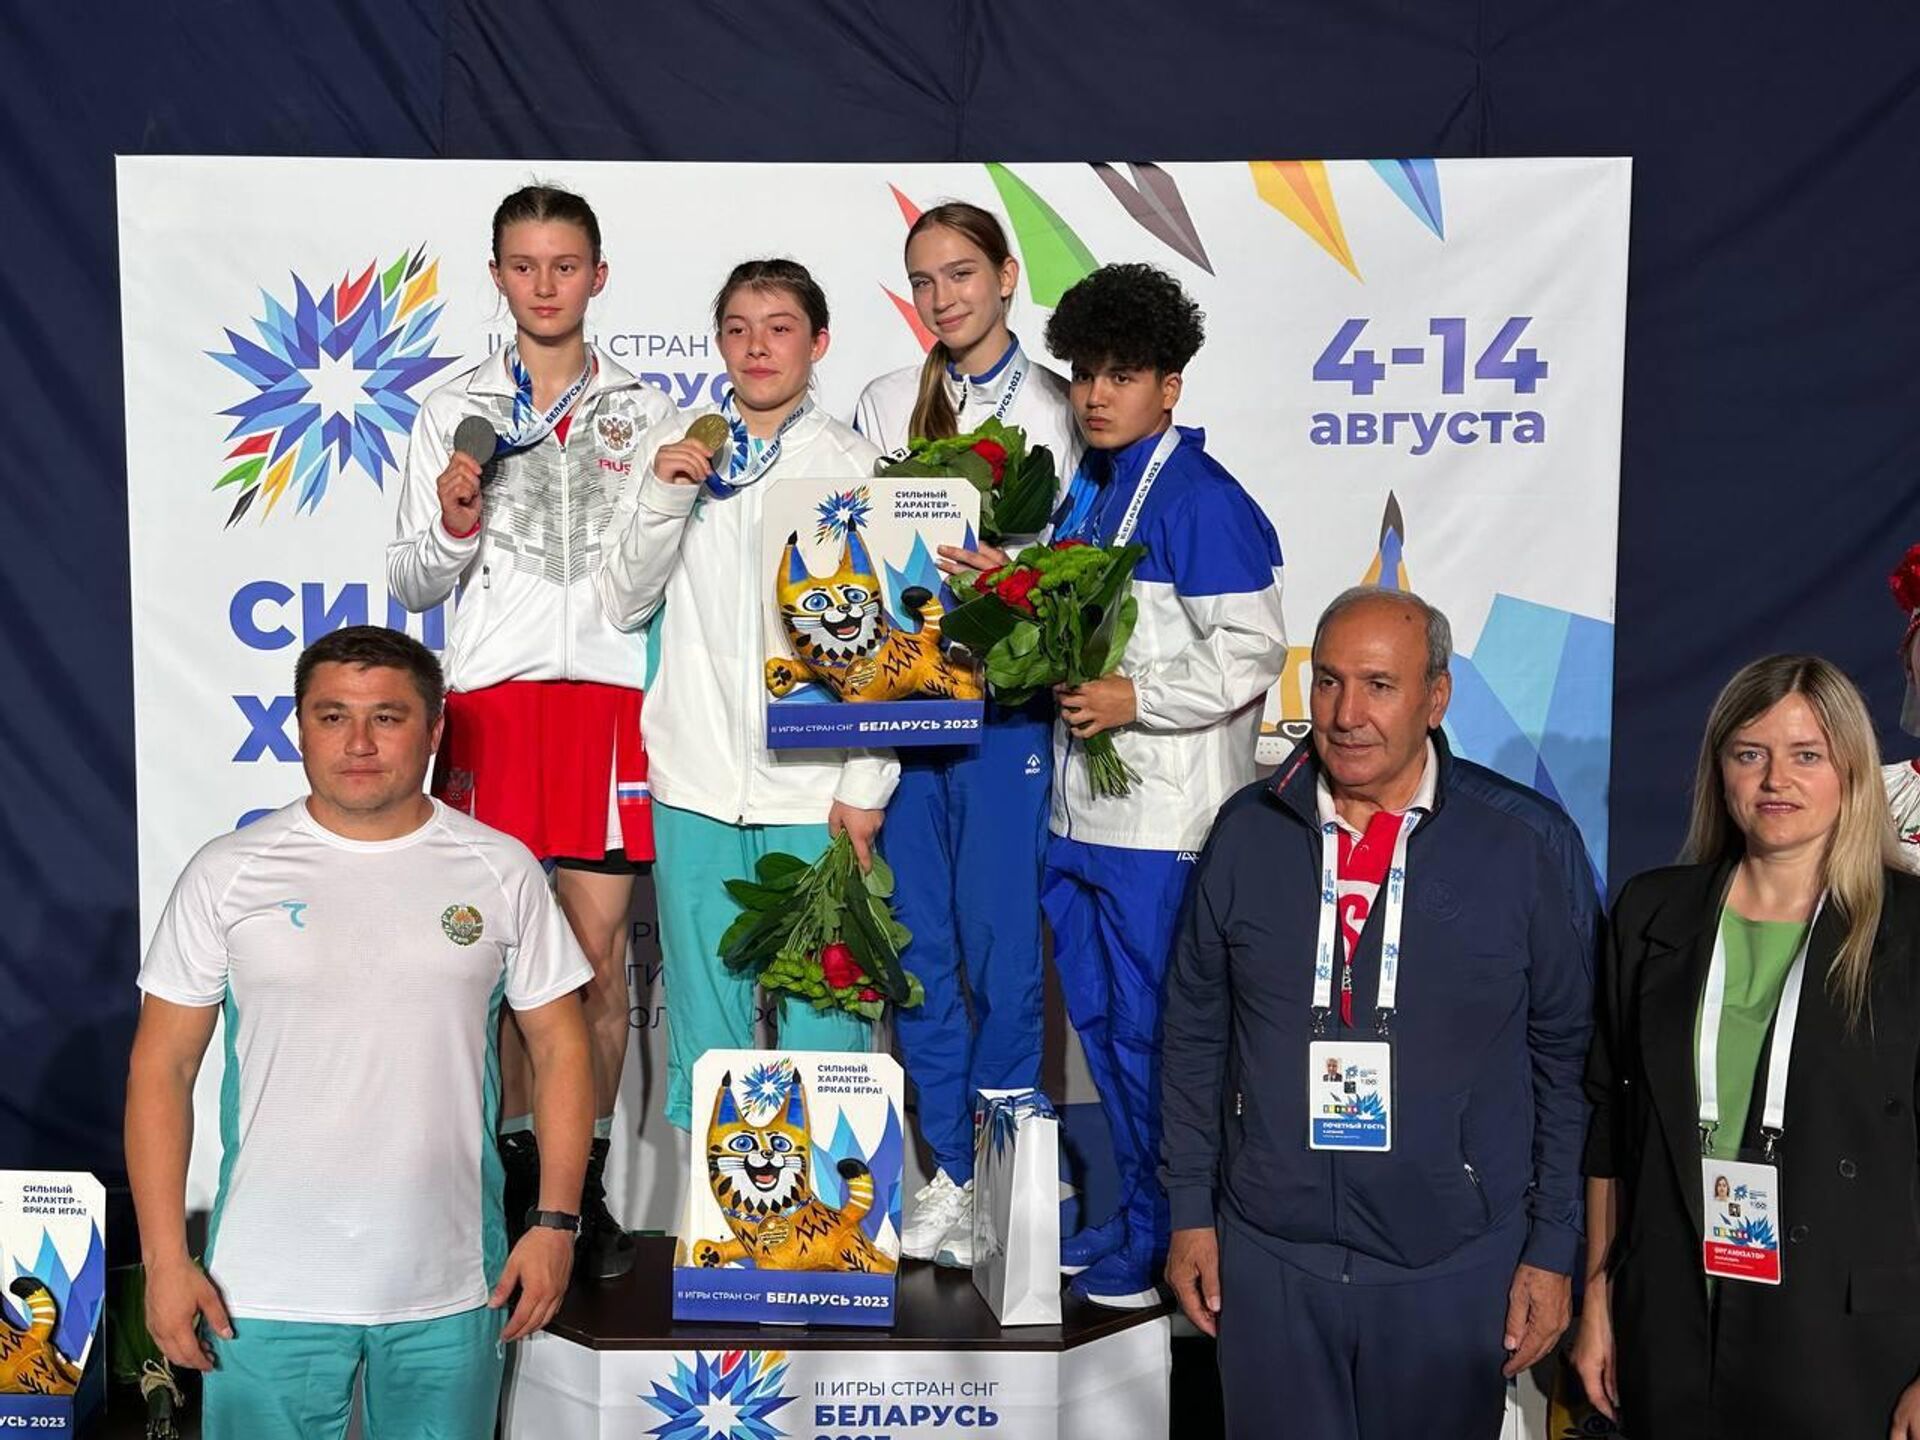 Женская сборная Узбекистана по боксу завоевала 12 медалей на II Играх стран СНГ - Sputnik Узбекистан, 1920, 12.08.2023